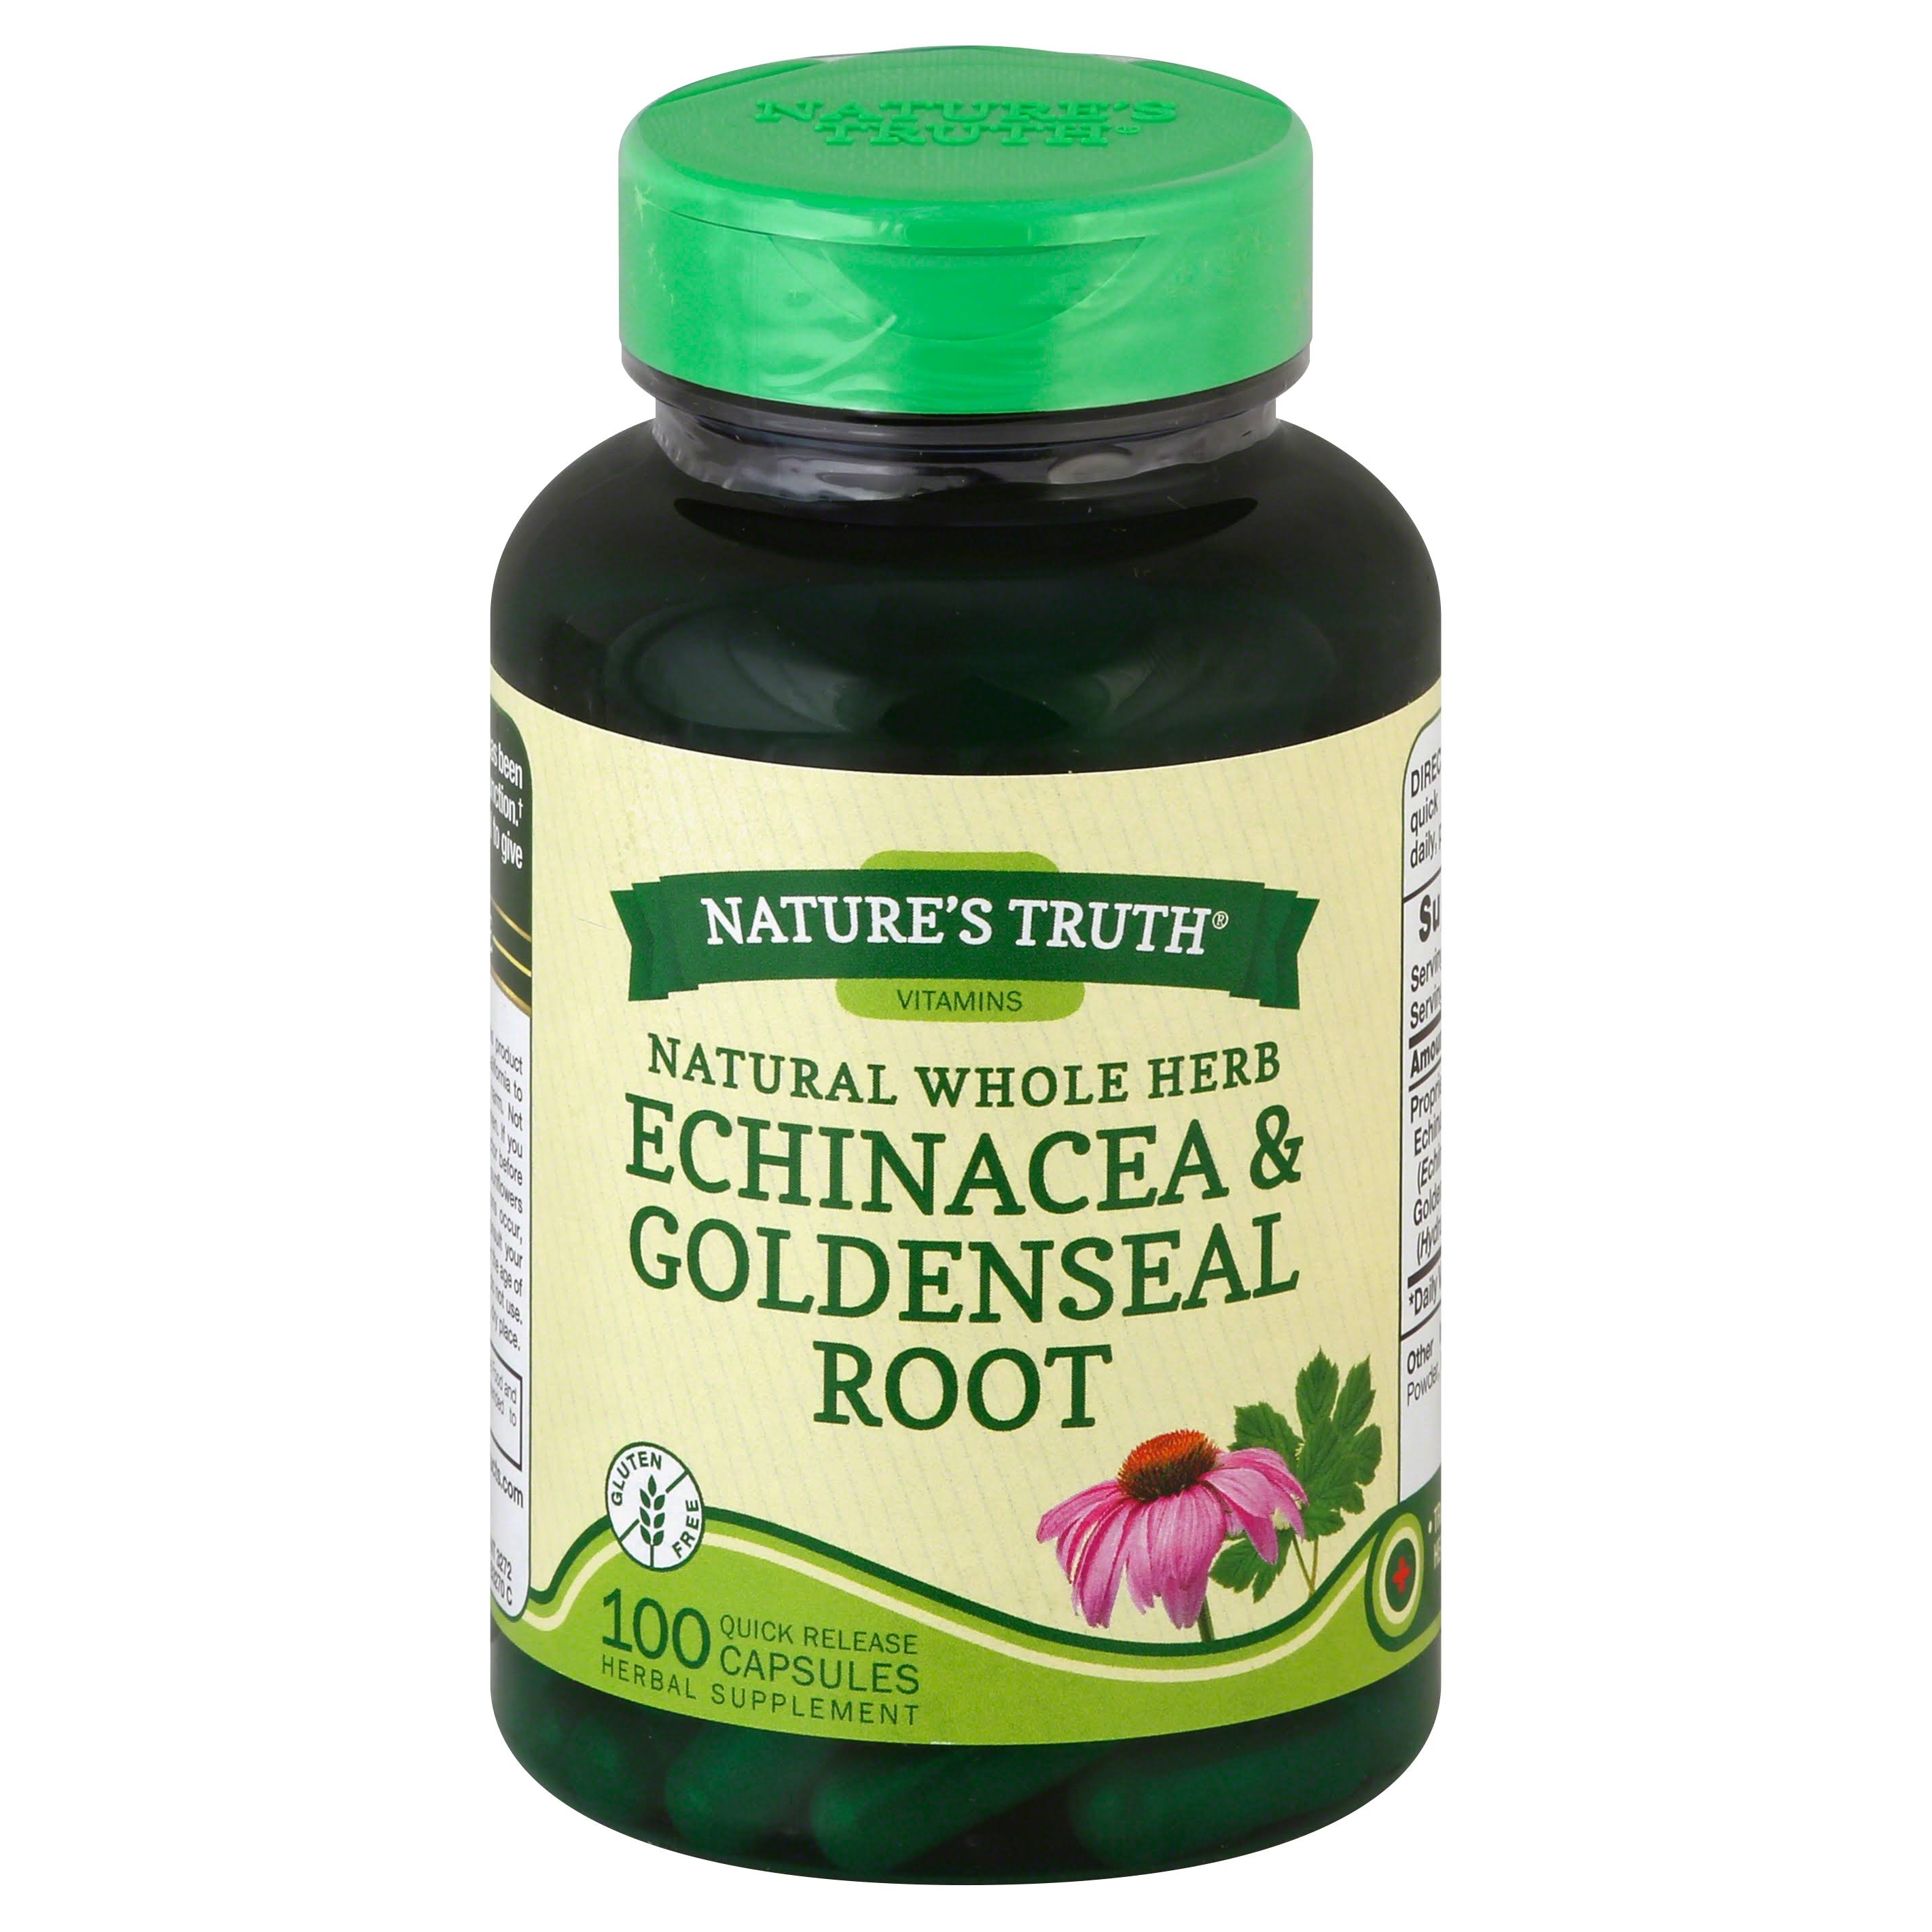 Natures Truth Echinacea & Goldenseal Root, Quick Release Capsules - 100 capsules